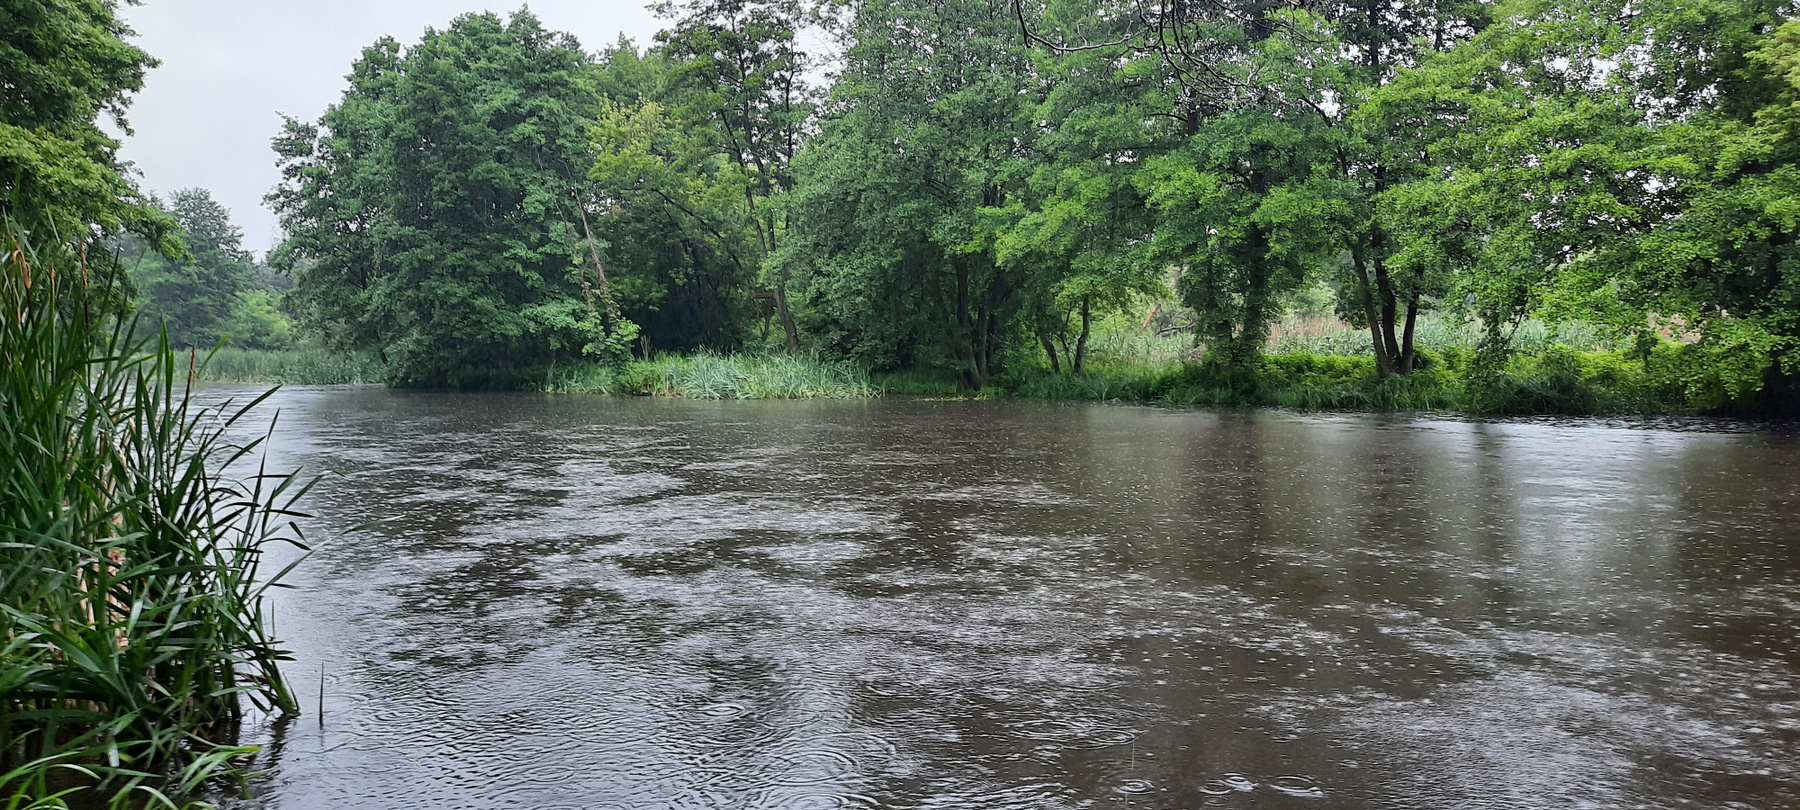 Река Езерка во время дождя река Польша